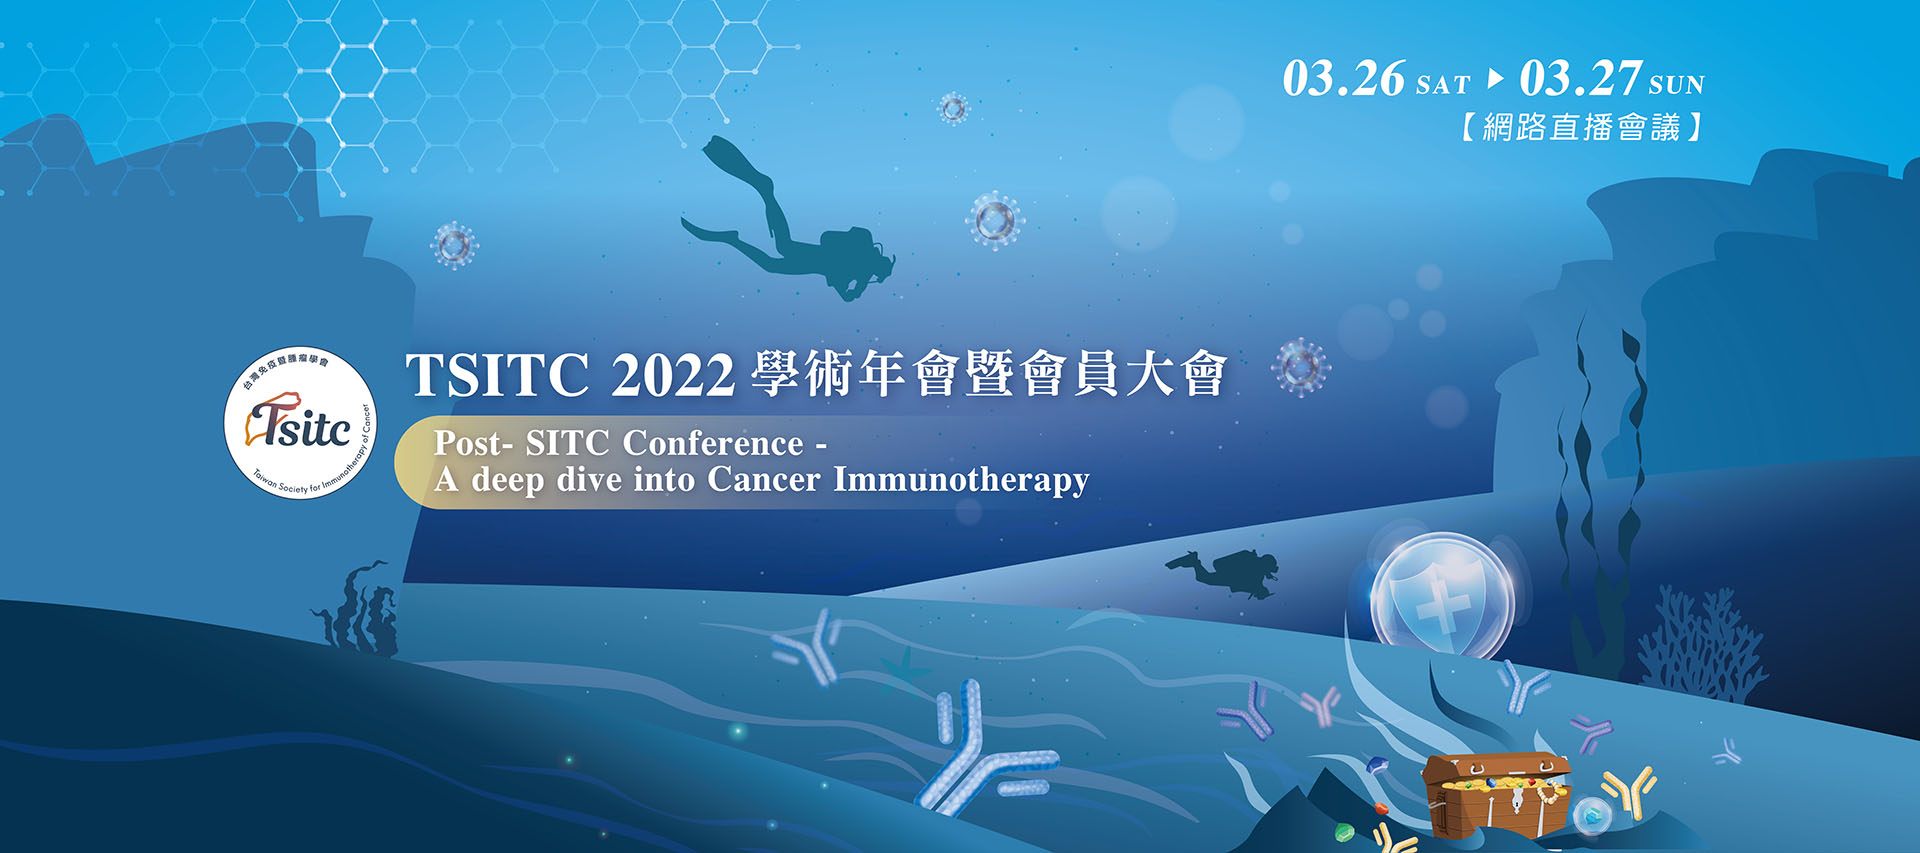 2022 台灣免疫暨腫瘤學會年會線上會議橫幅